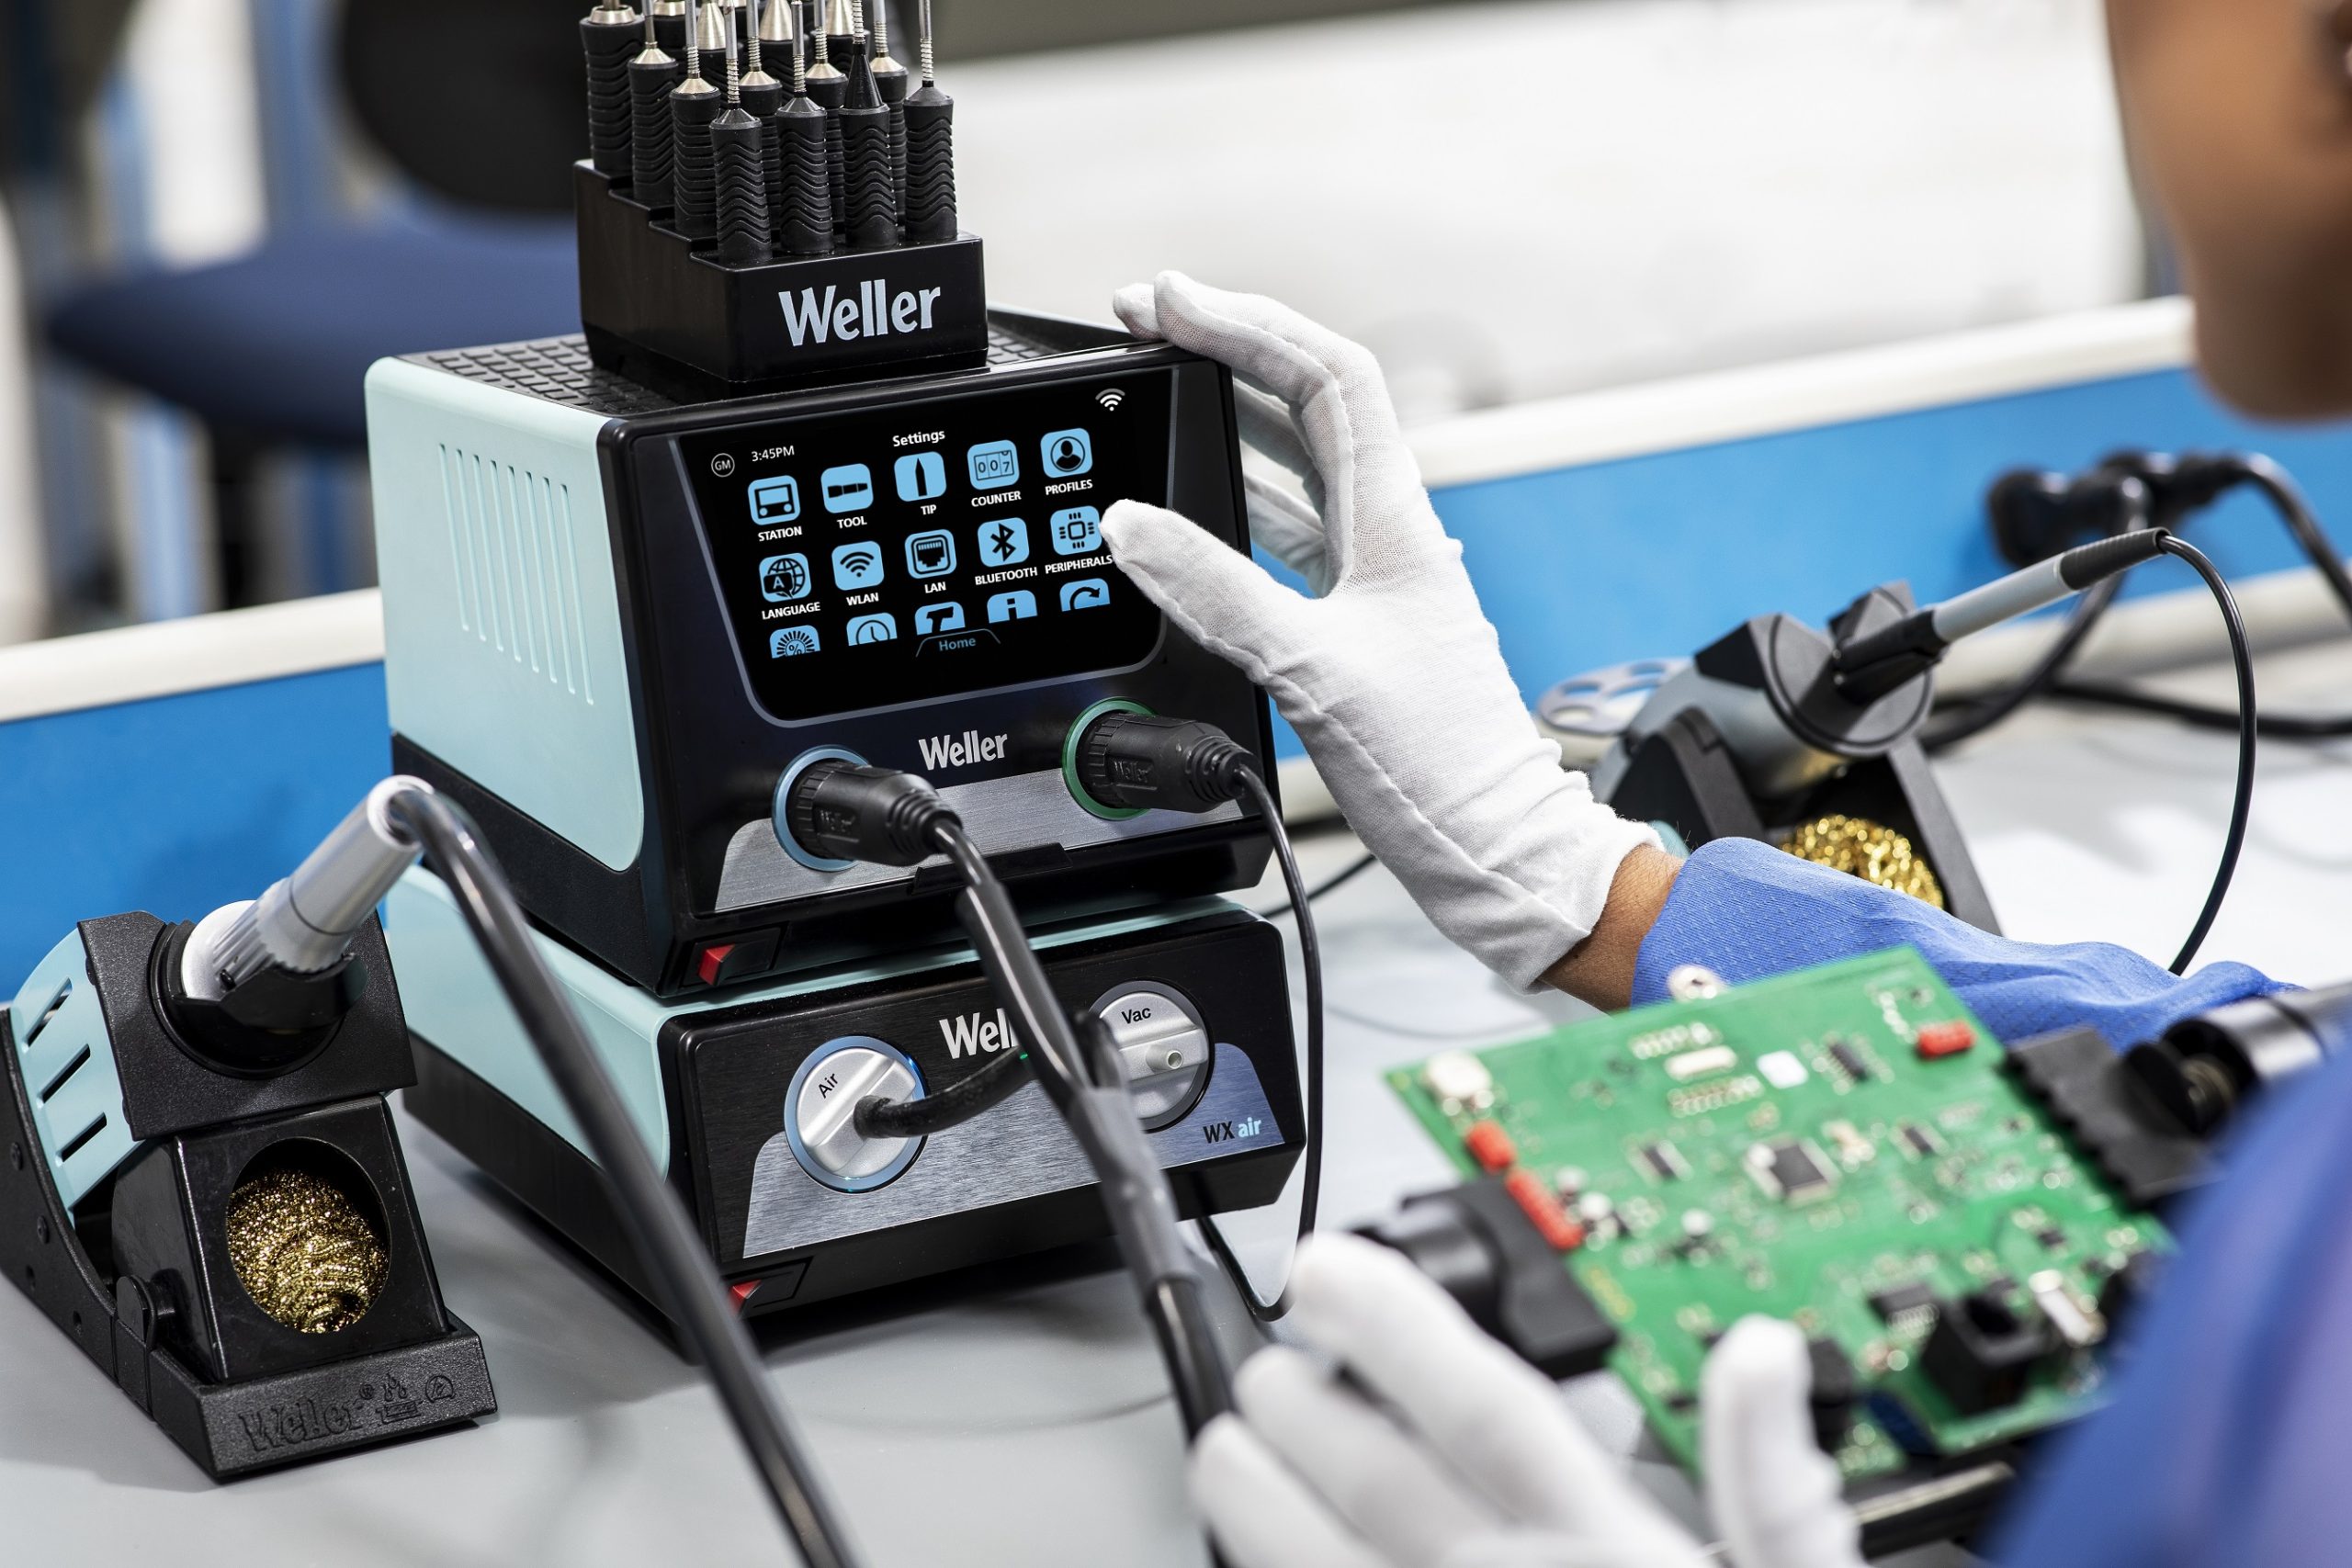 Weller’s Wxsmart Smart Soldering Platform Connects the Future of Soldering